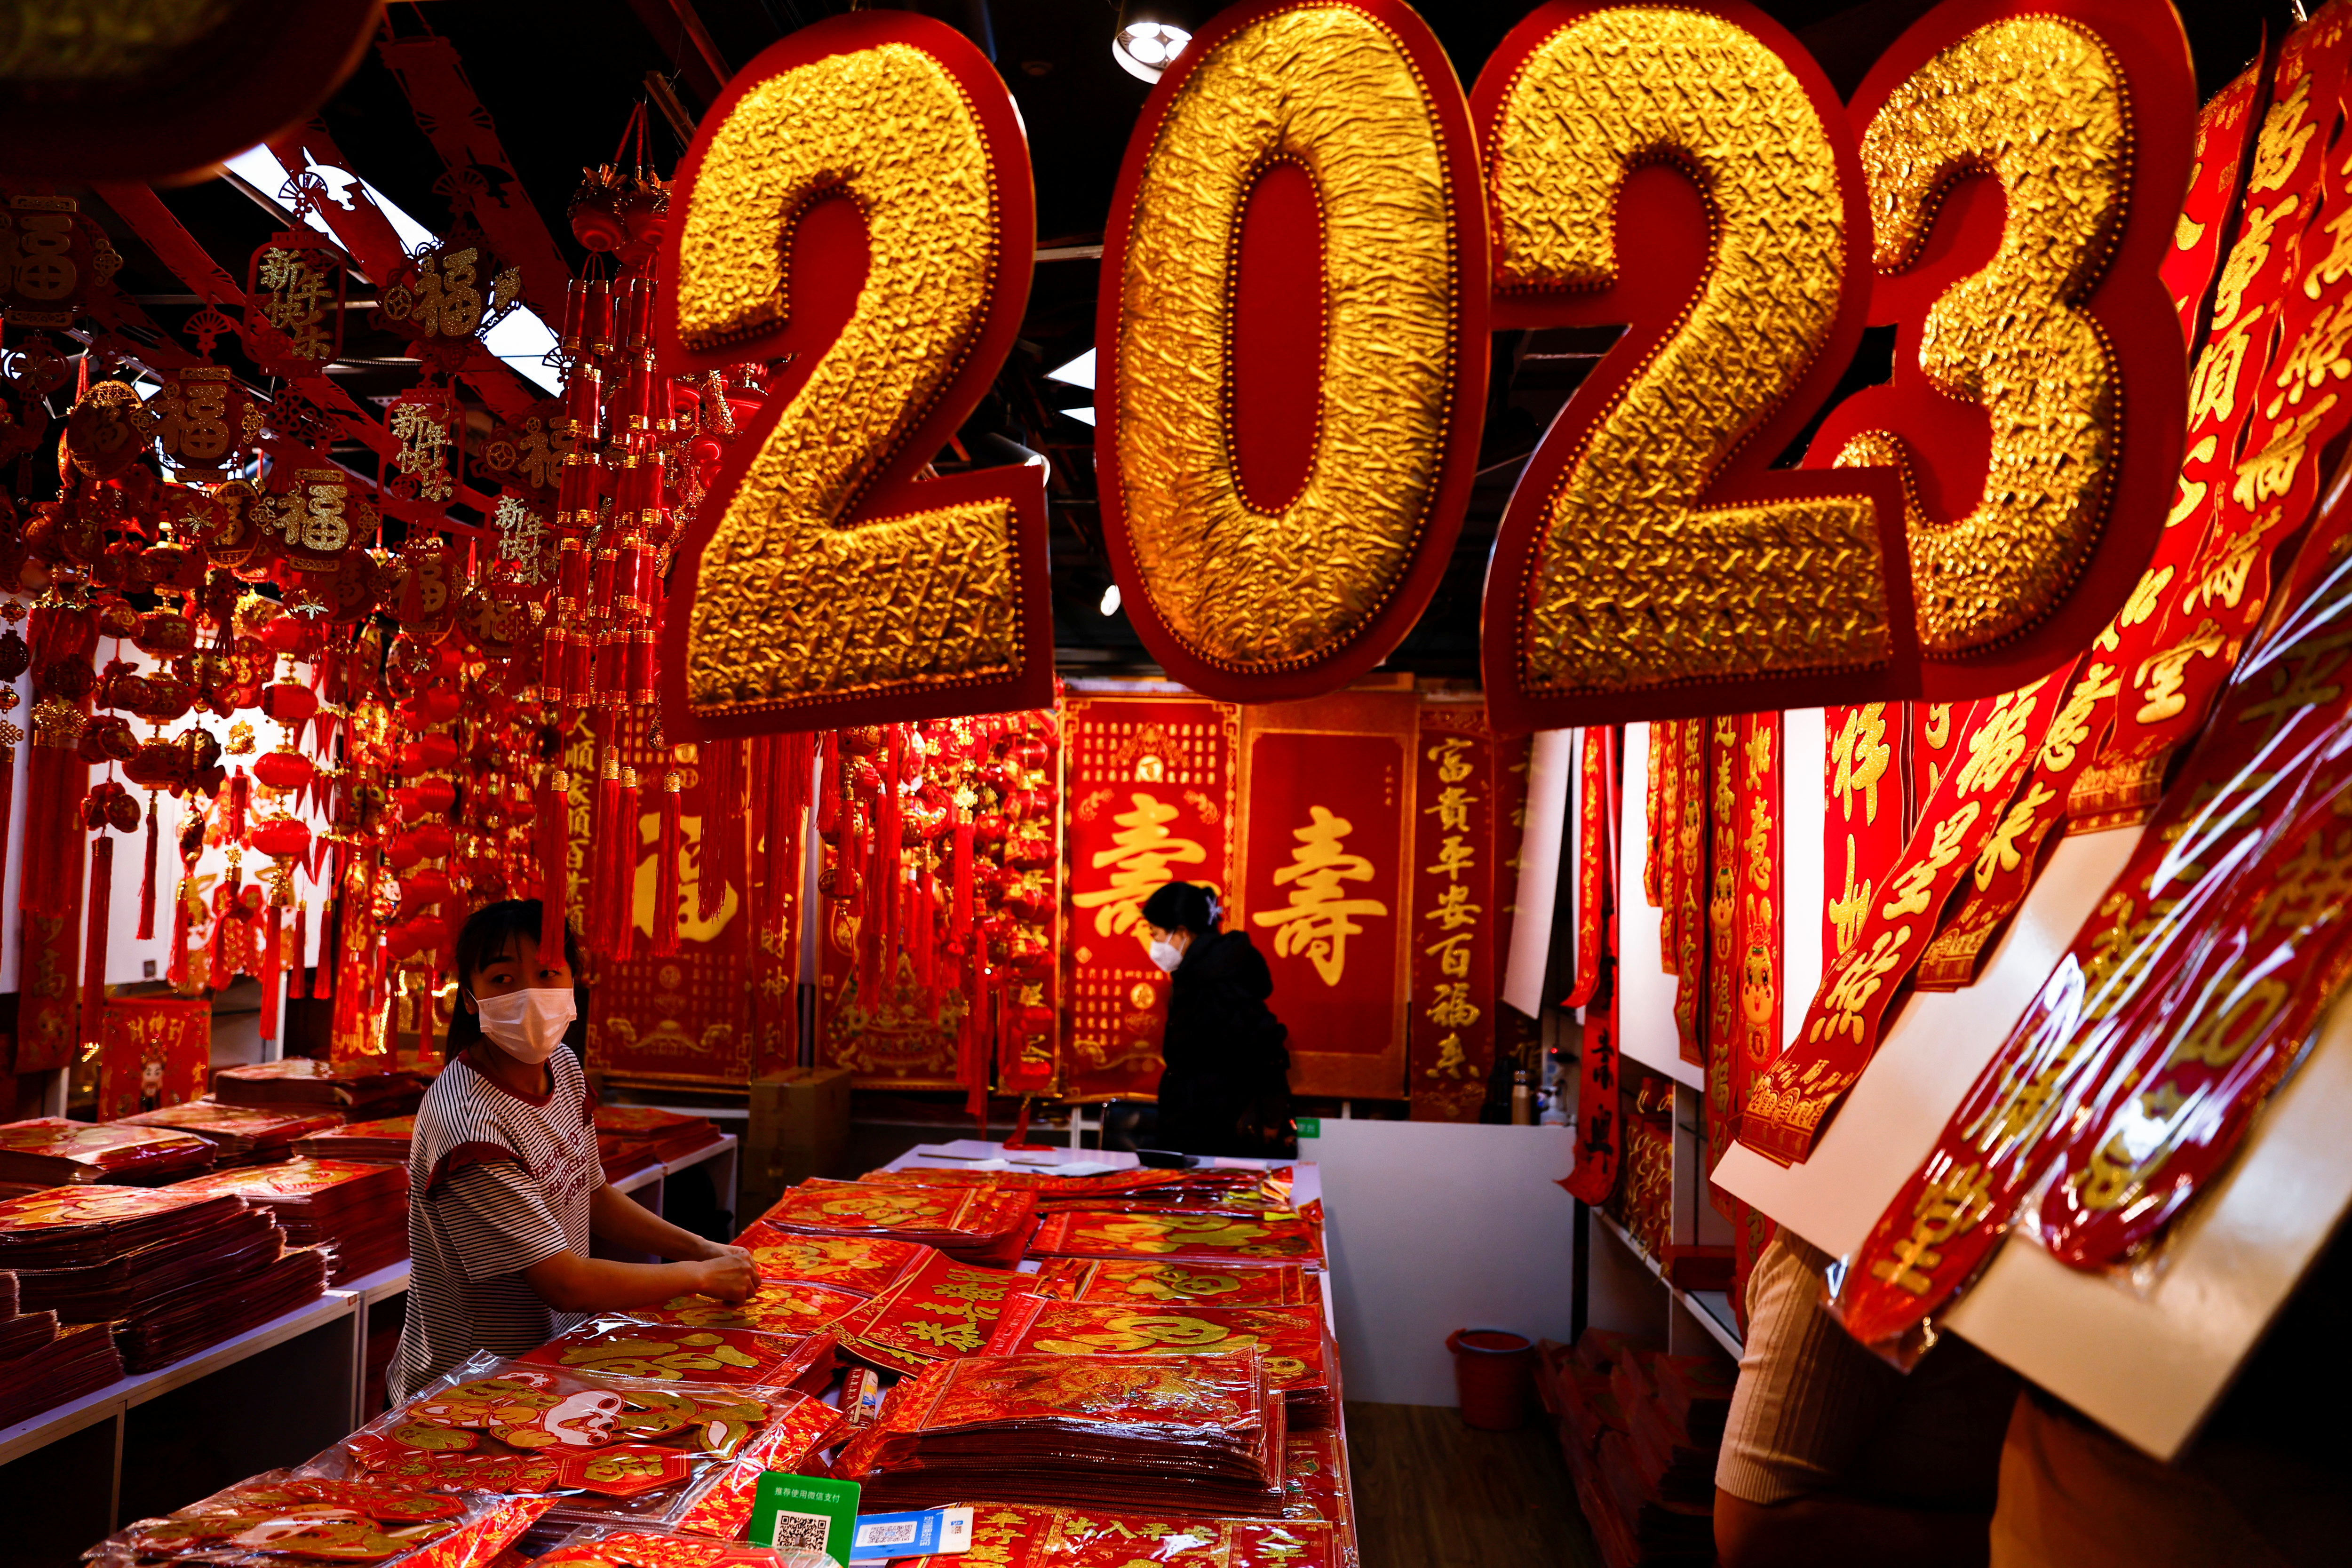 La situación se prevé peor ante la celebración del Año Nuevo Chino a finales de mes, que provocará millones de viajes de pobladores urbanos a zonas rurales para visitar a sus familiares. (REUTERS)